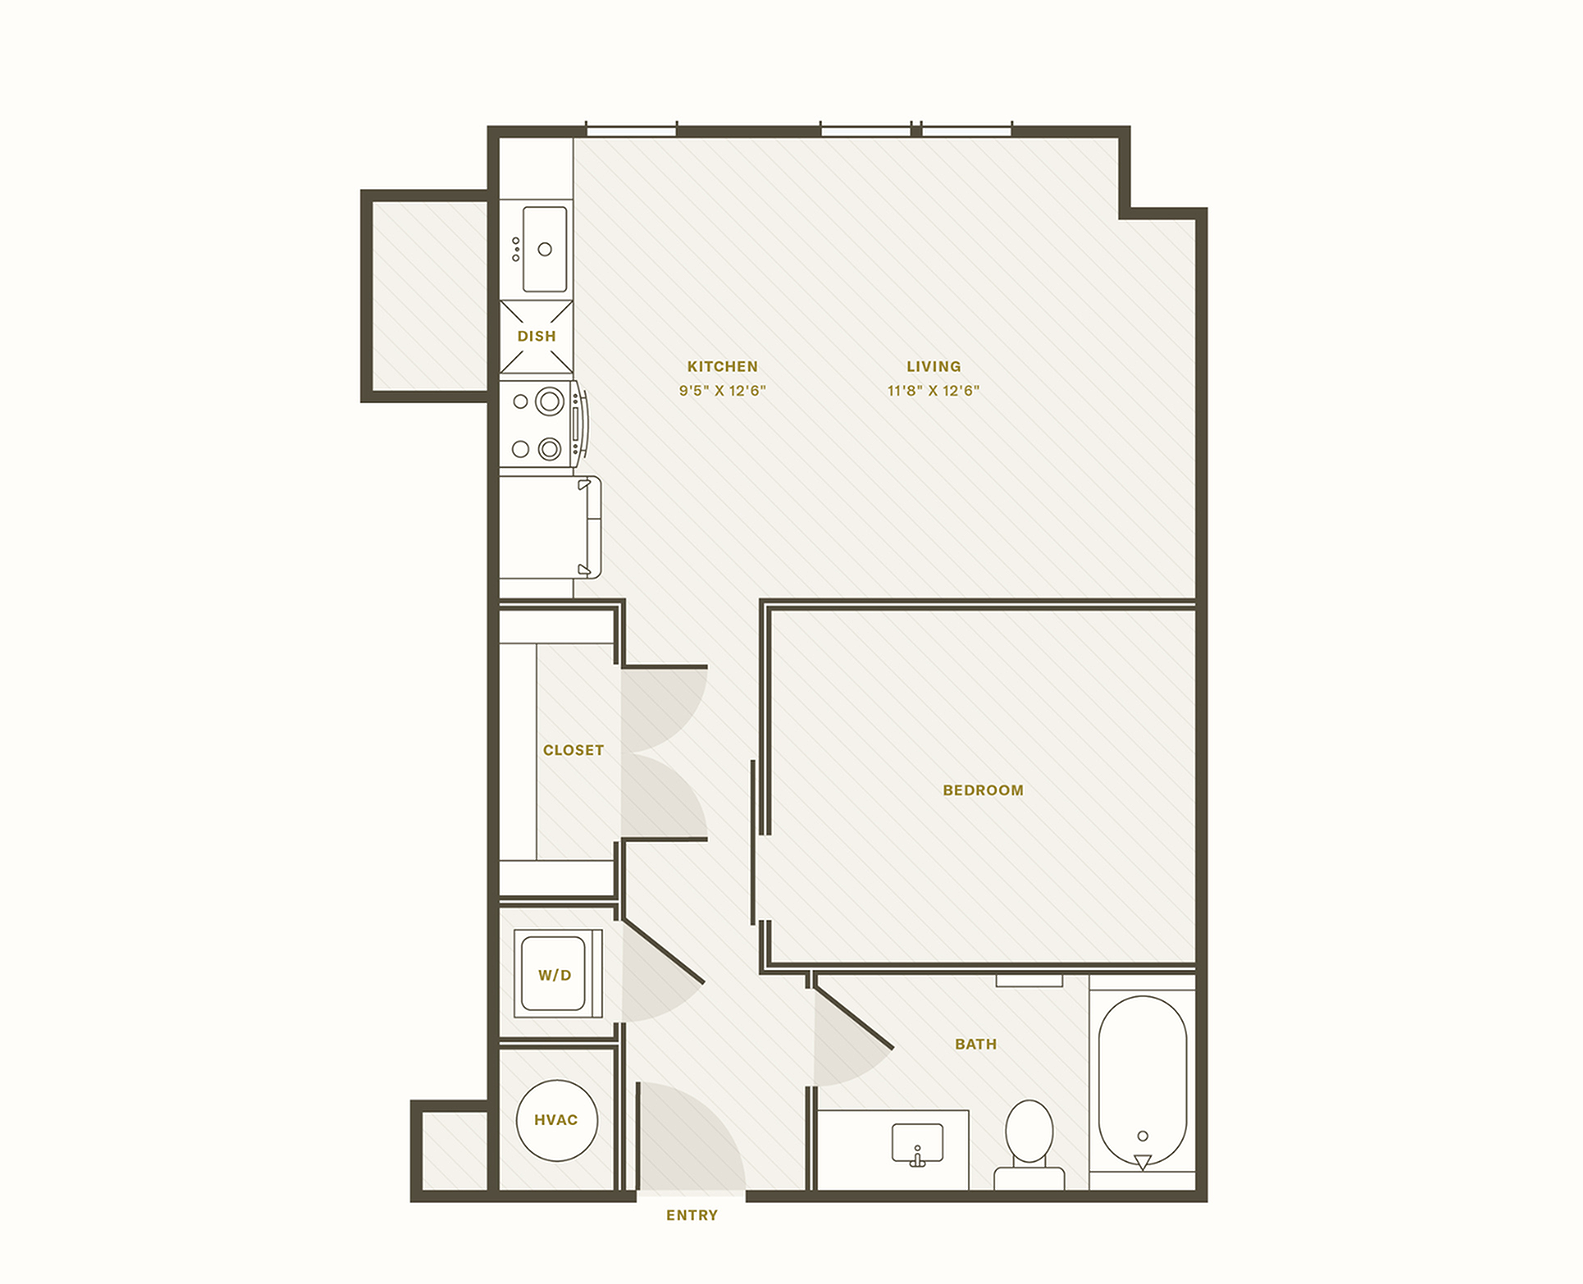 The Portico floor plan